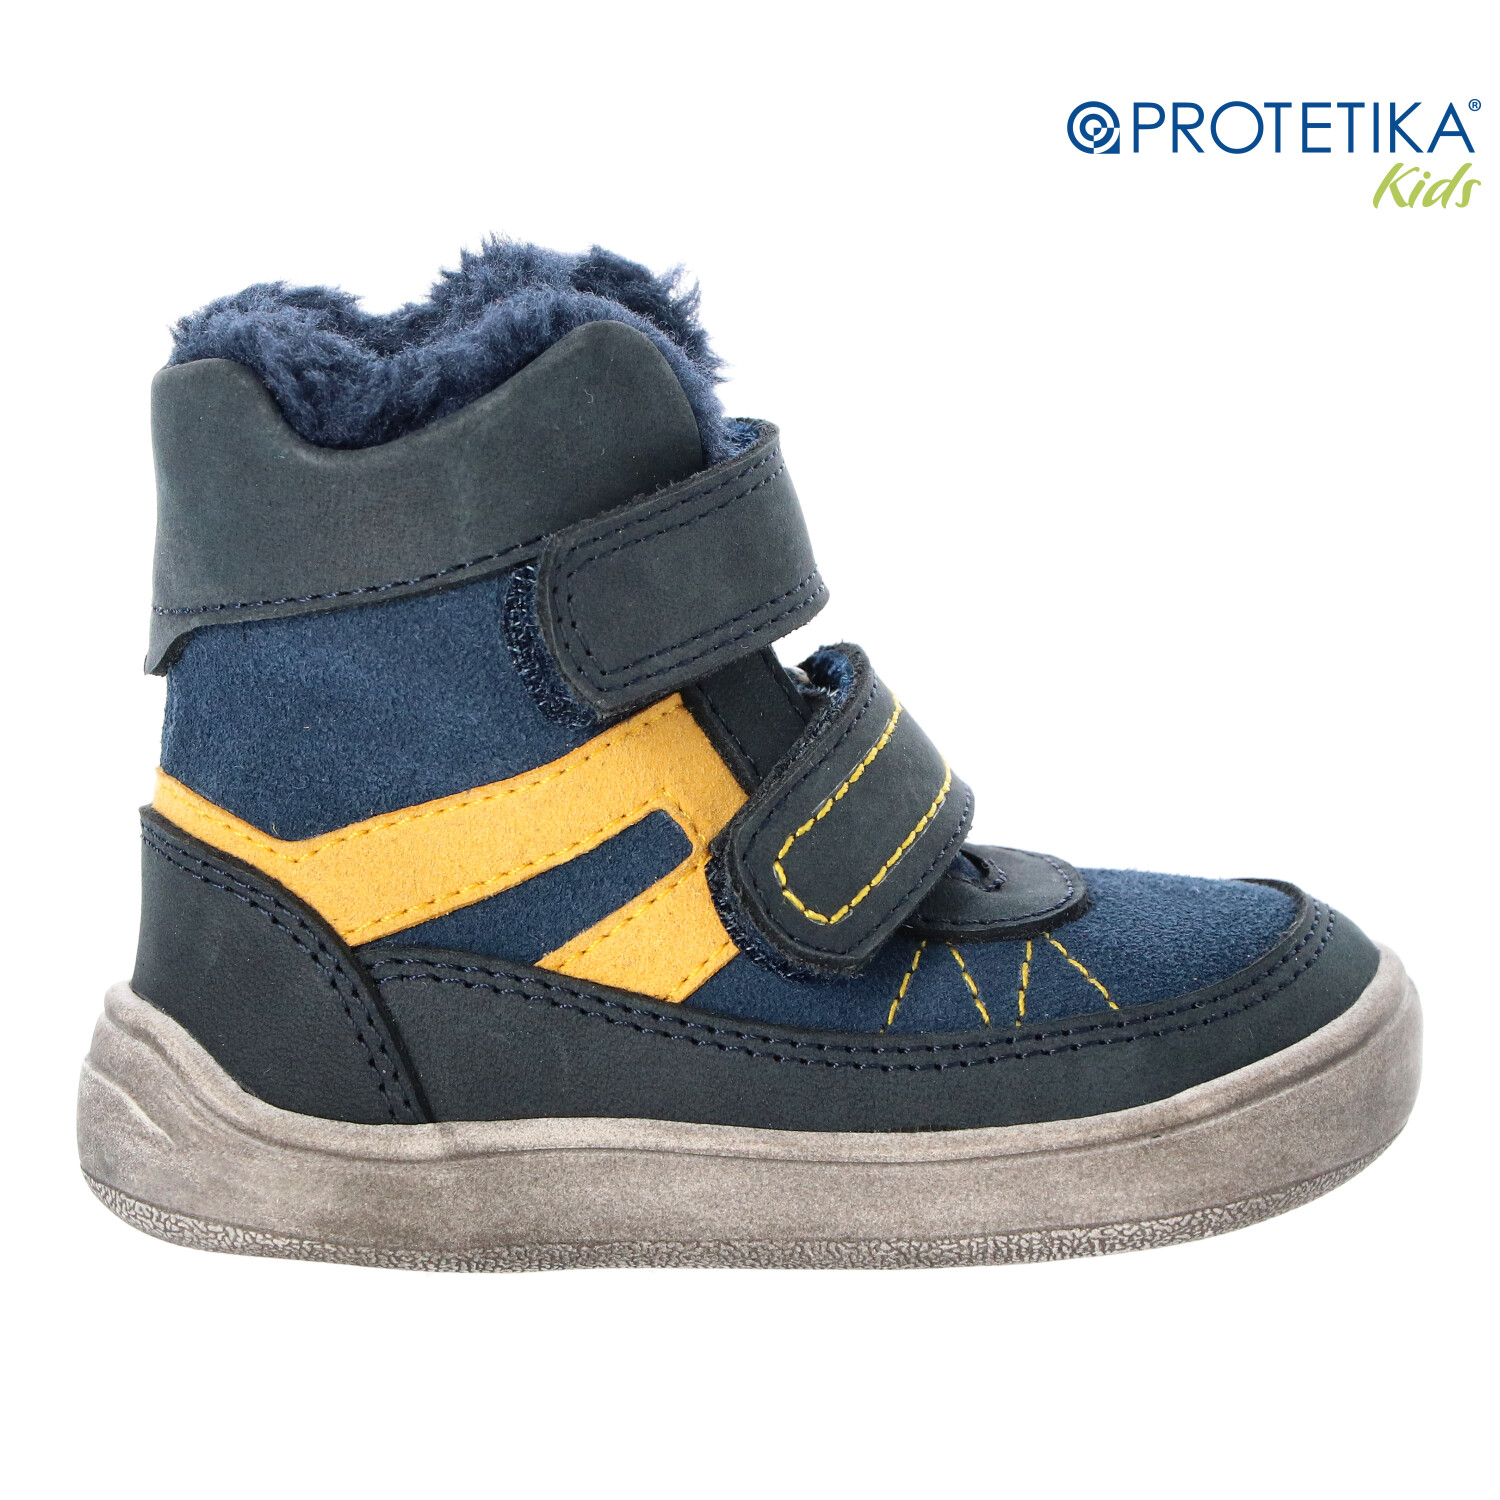 Protetika - zimné barefootové topánky RODRIGO navy PRO-tex - zateplené